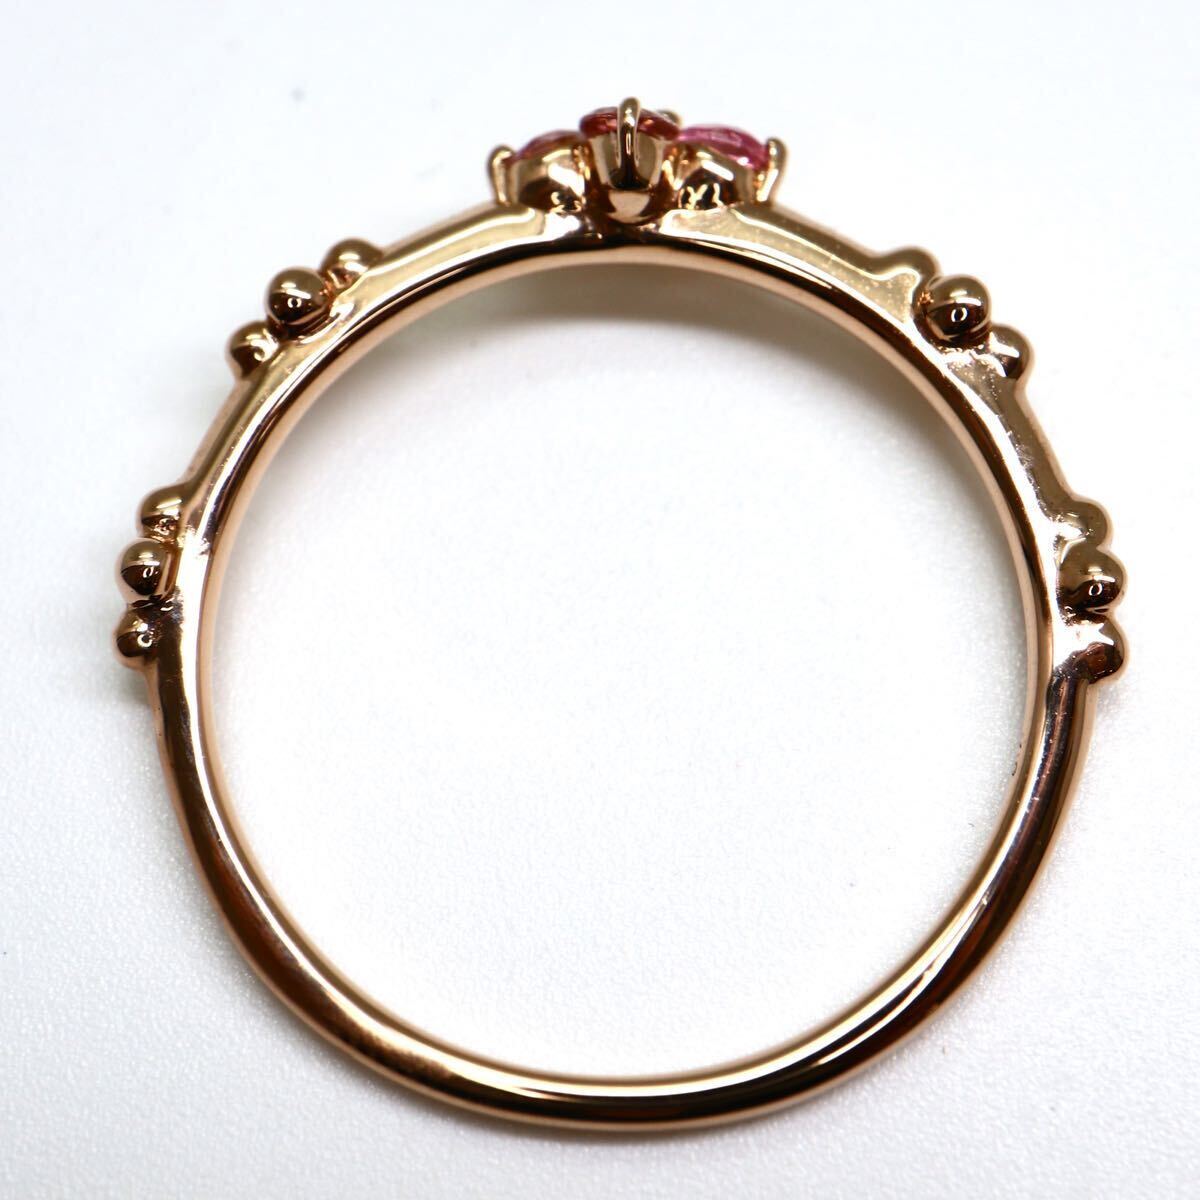 ソーティング付き!!《K18 天然ピンクトルマリンリング》A 約1.7g 約12号 tourmaline ジュエリー ring 指輪 pearl EA4/Eの画像6